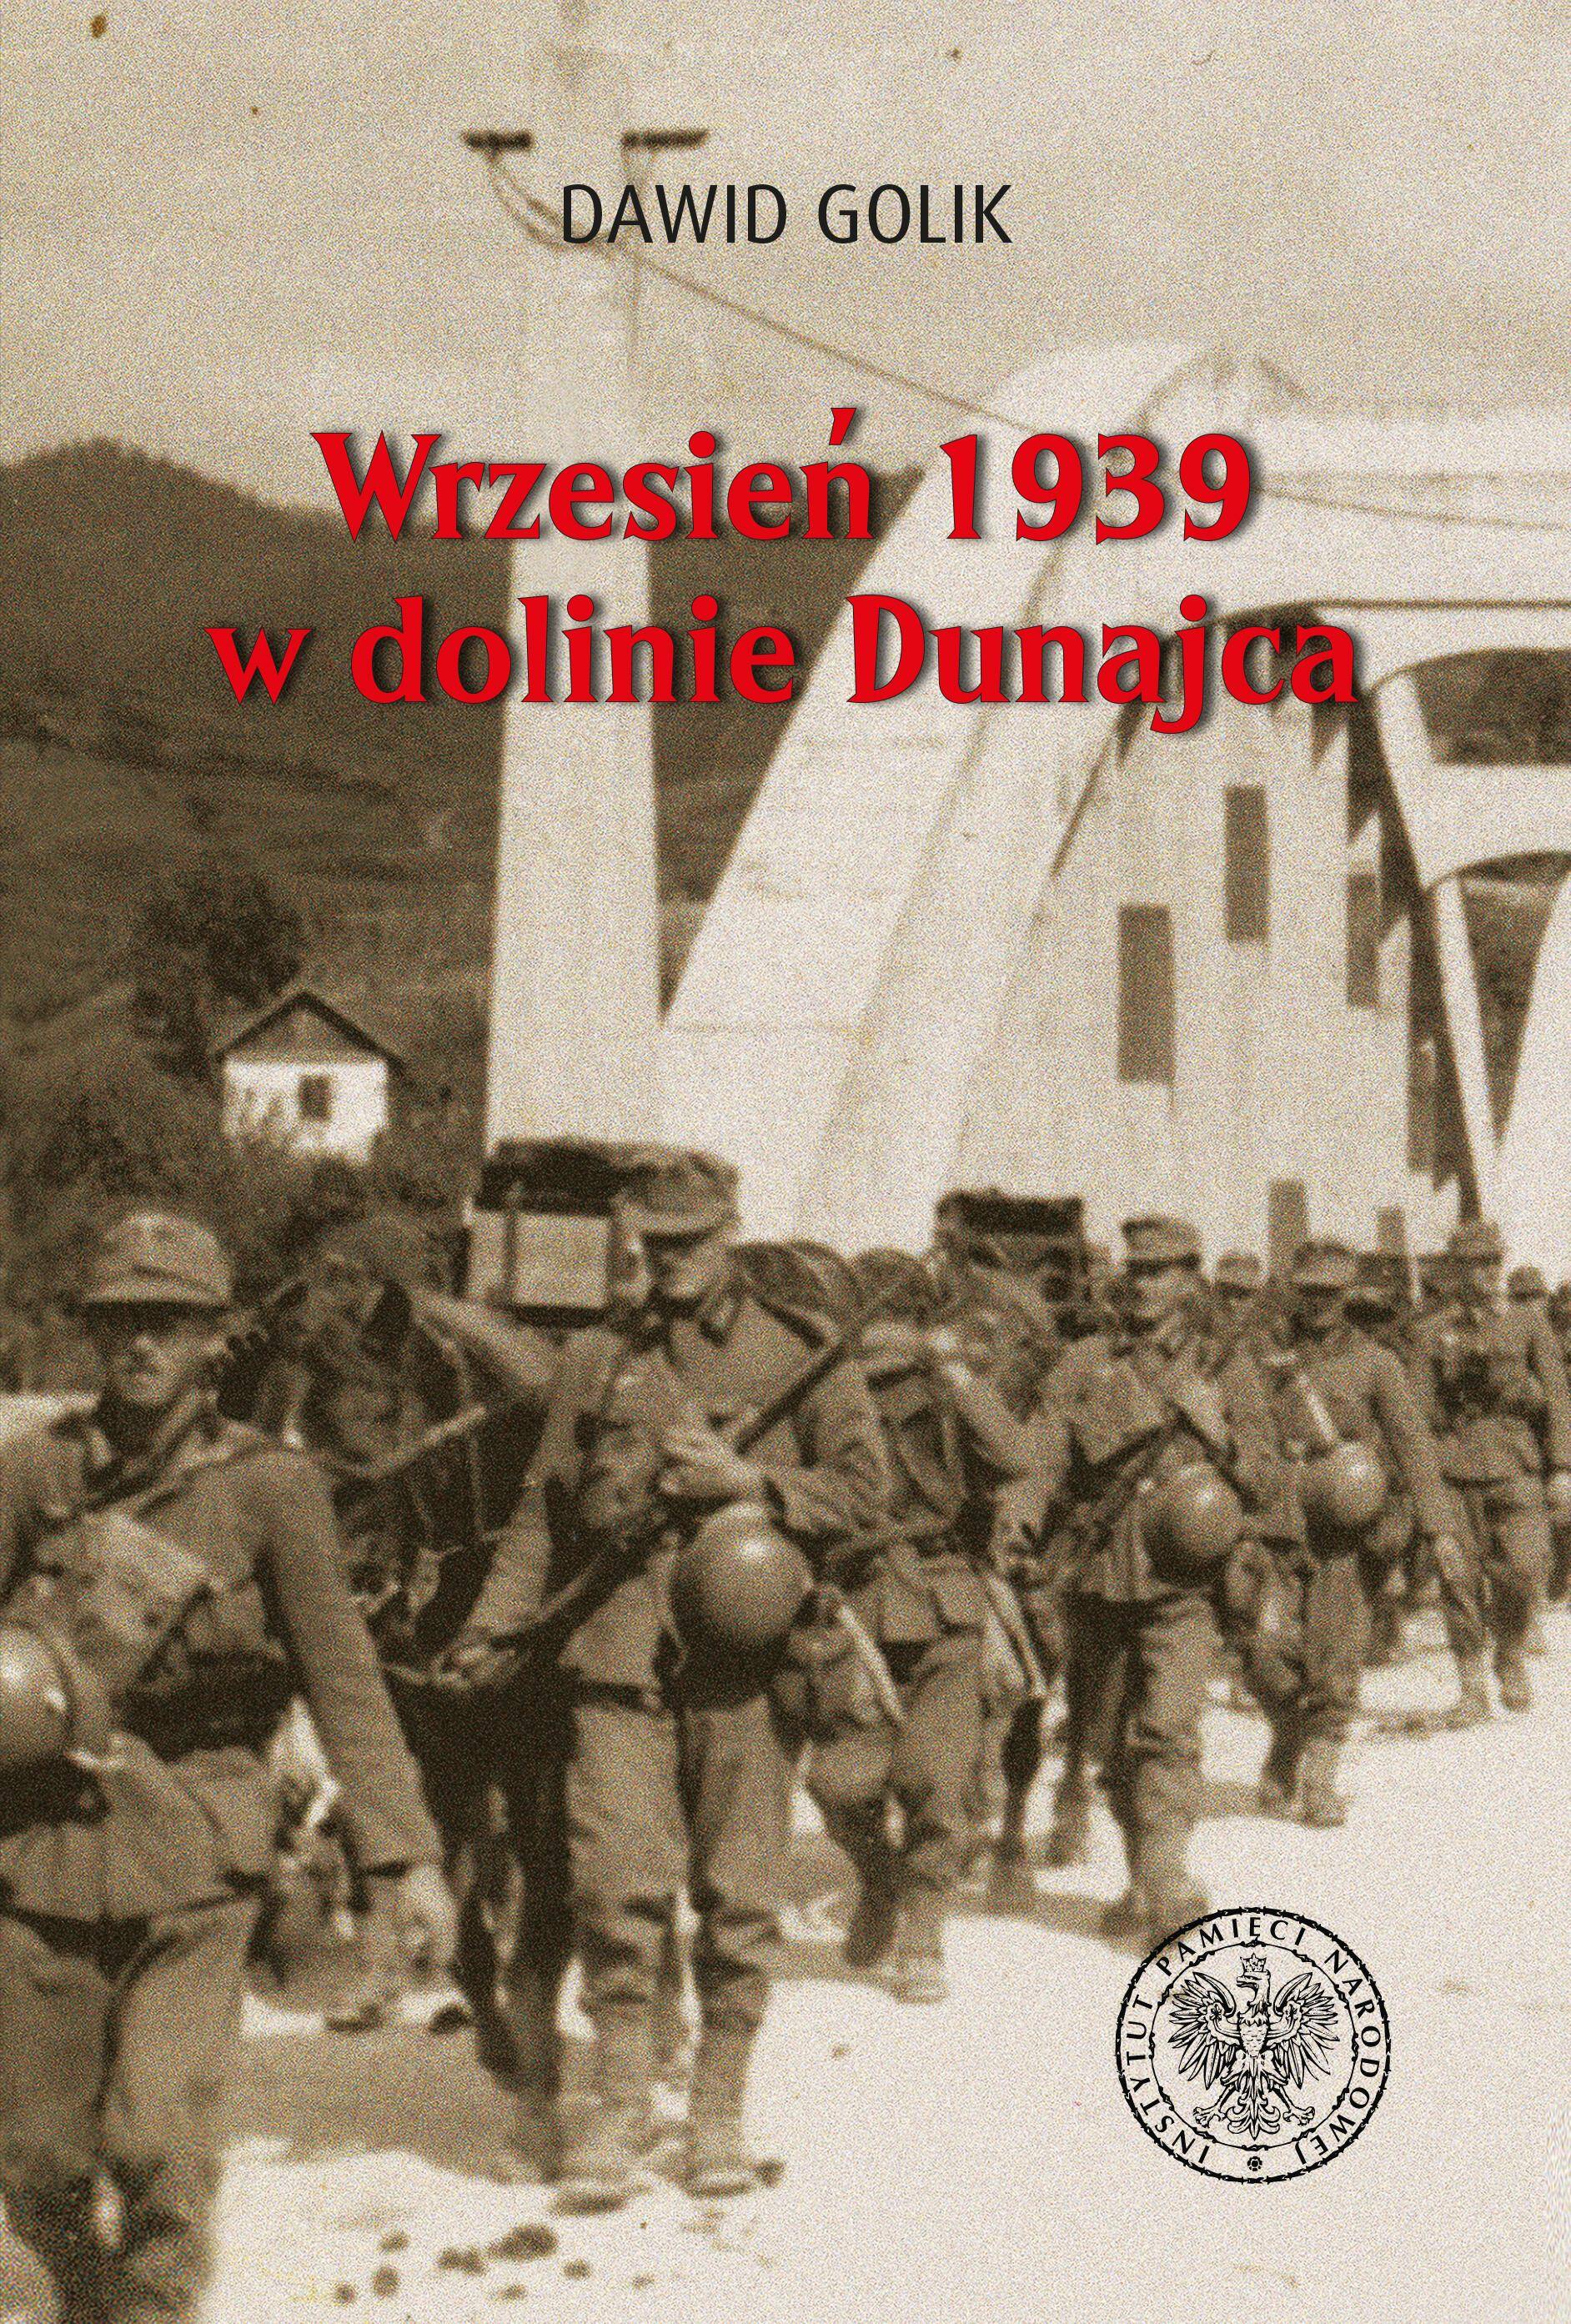 Wrzesień 1939 w dolinie Dunajca. Bój graniczny i walki nad górnym Dunajcem między 1 a 6 września 1939 roku wyd. 2